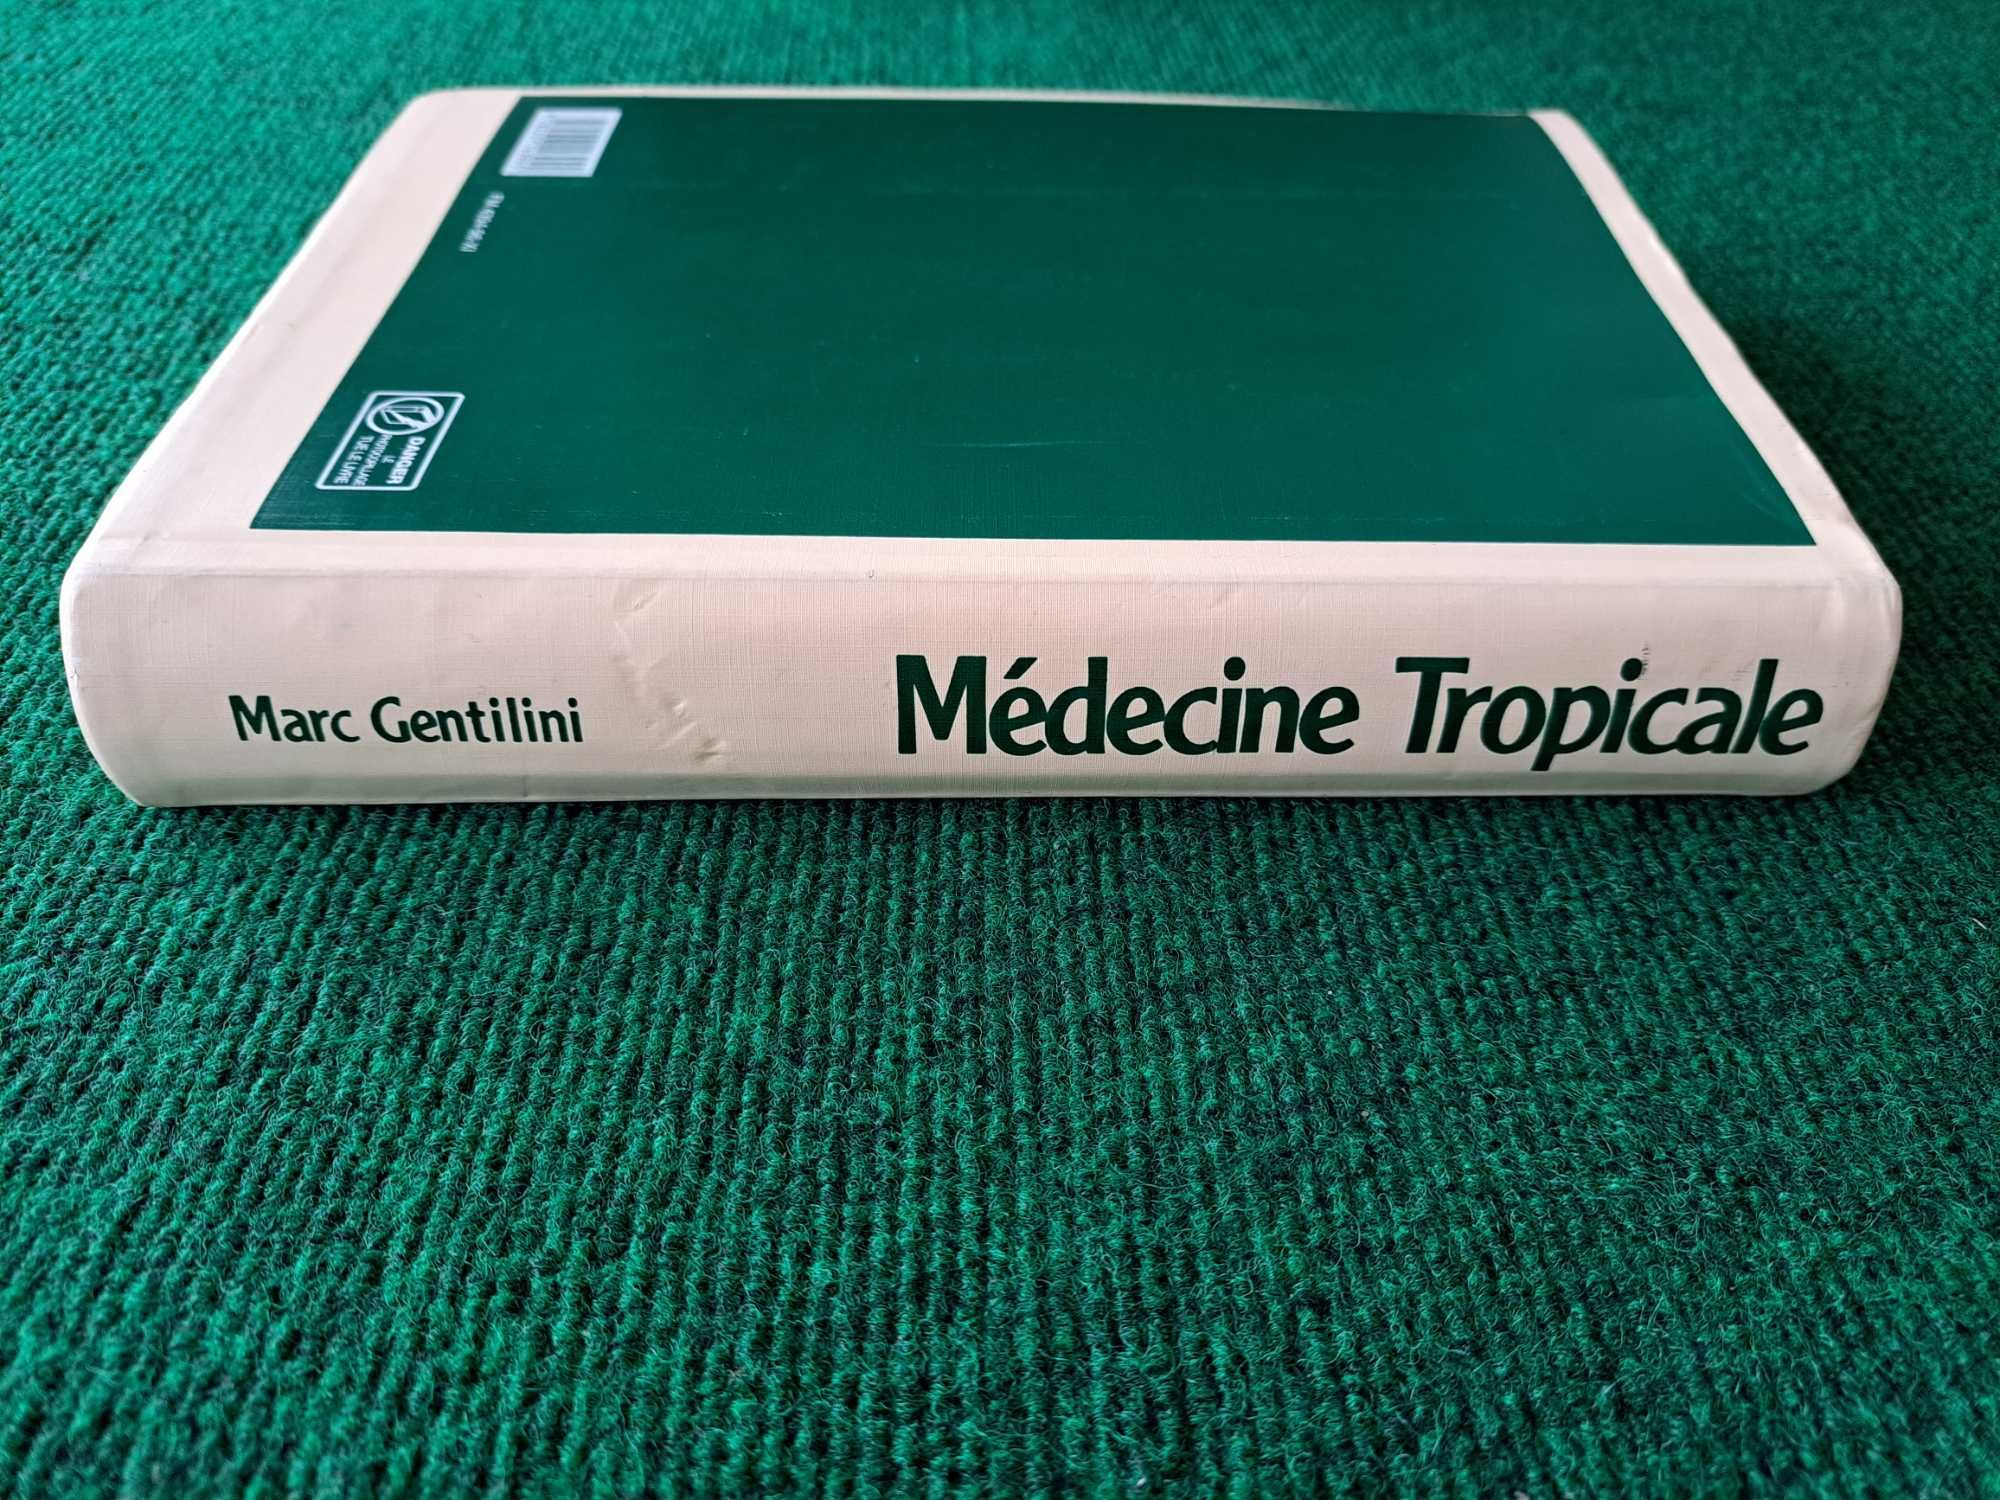 Médecine Tropicale - Marc Gentilini (Medicina)